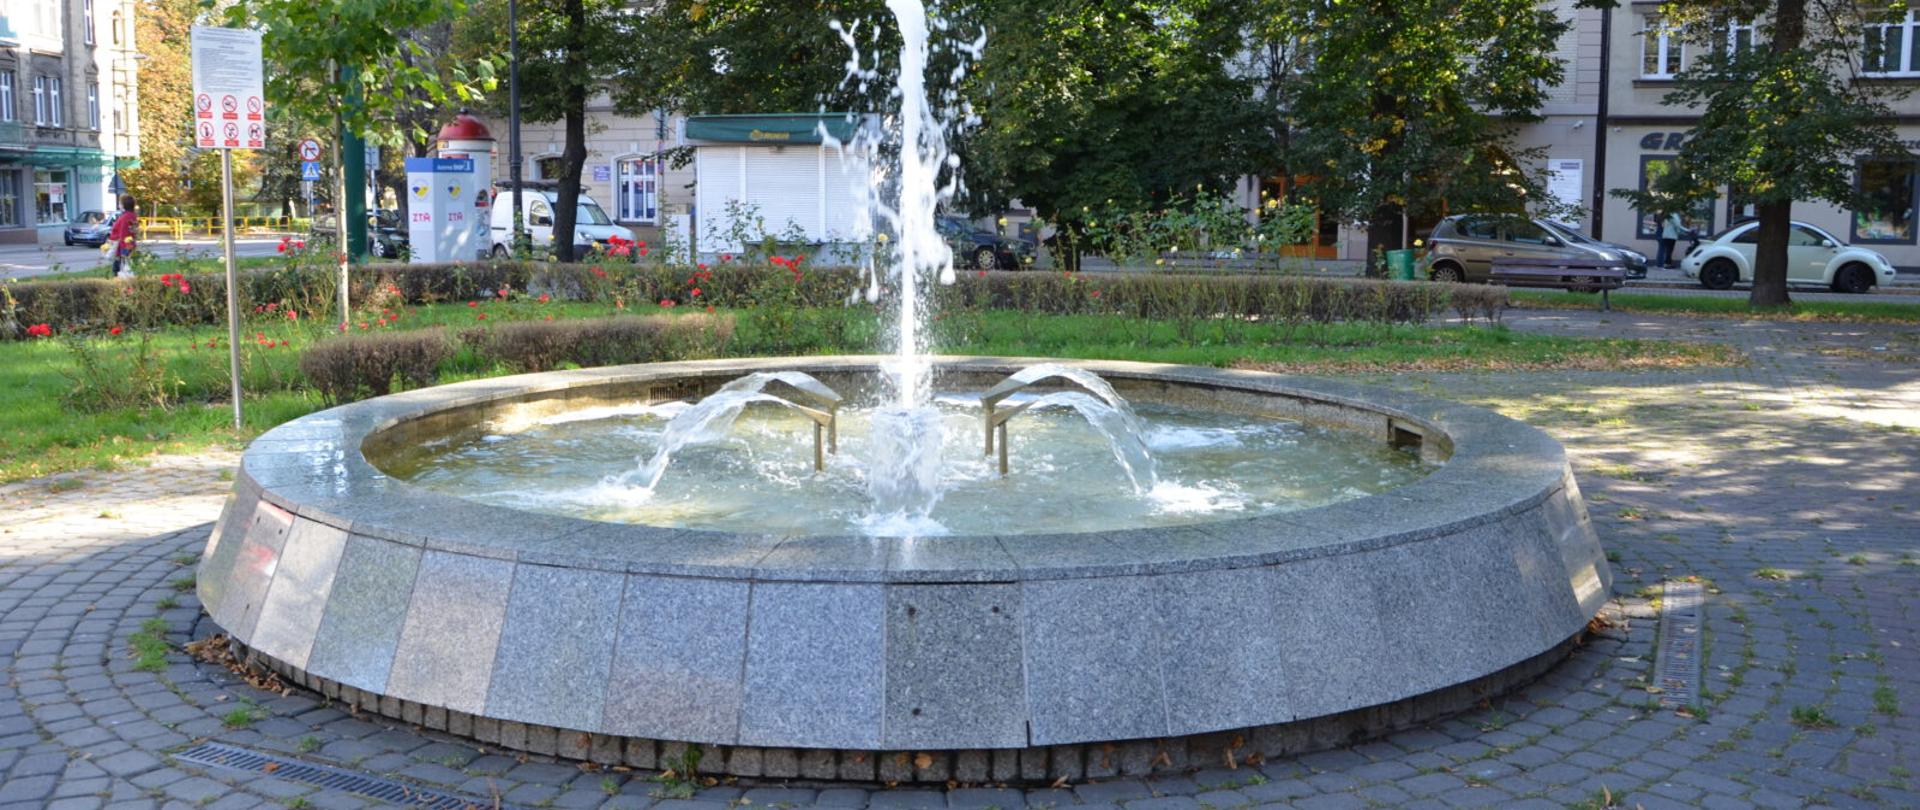 zdjęcie przedstawia fontannę na tle zieleń i bloki